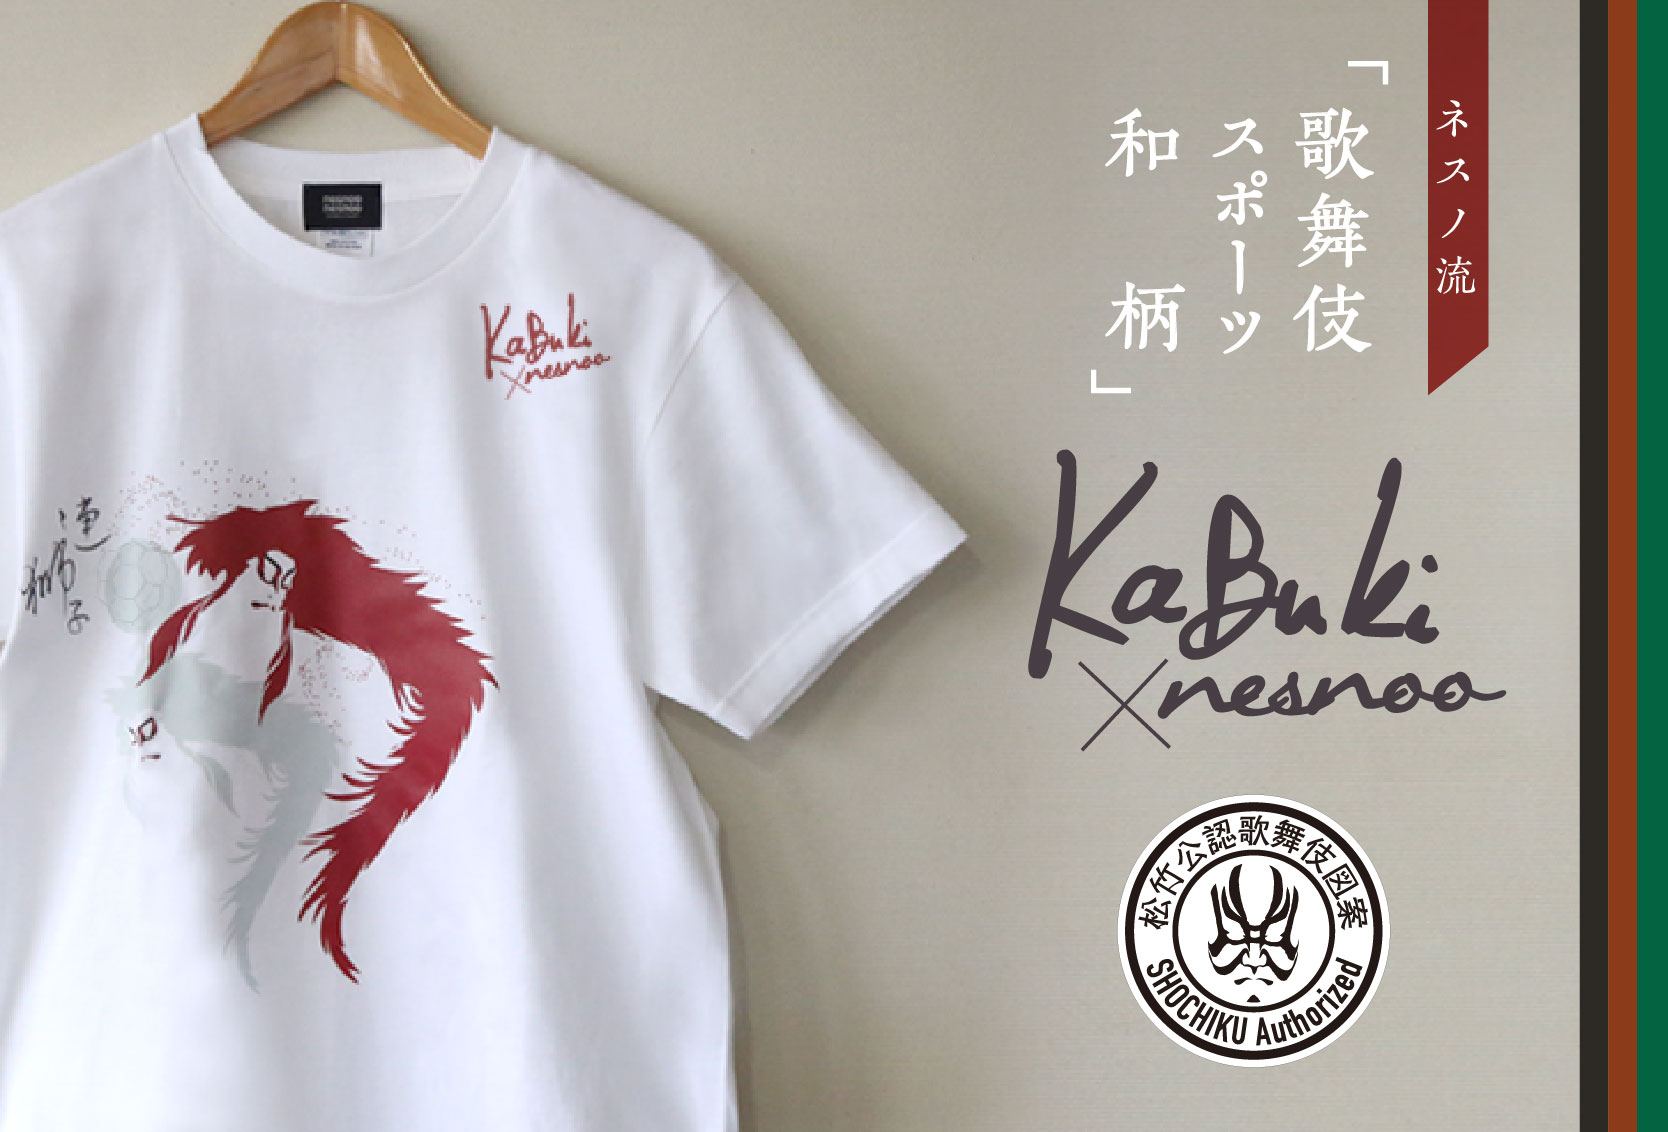 歌舞伎とnesnooのコラボレーションTシャツ